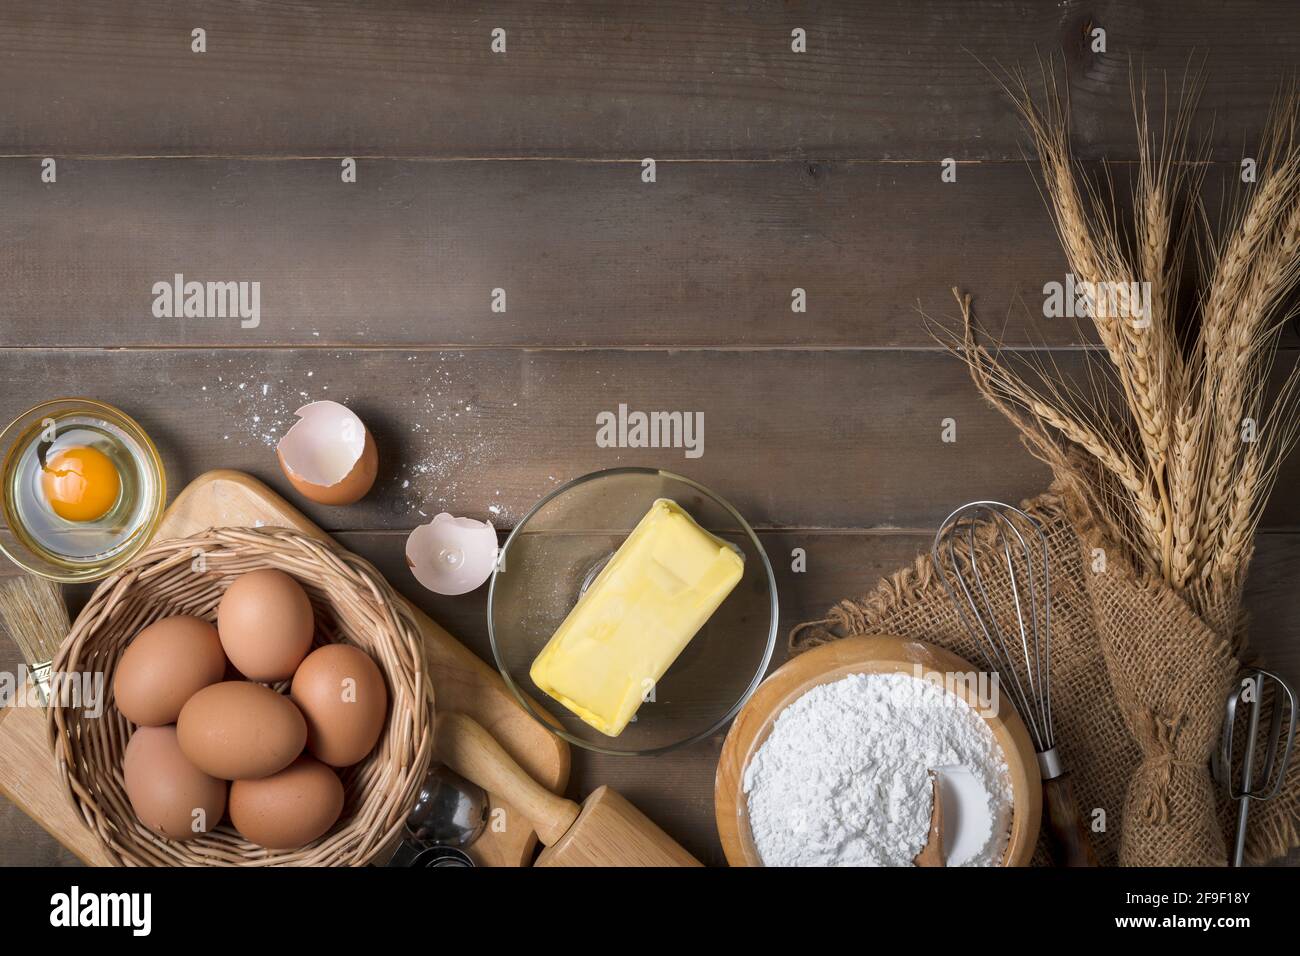 Brotmehl mit frischem Ei, ungesalzene Butter und Zubehör Bäckerei auf Holz Hintergrund, bereiten für hausgemachte Bäckerei Konzept Stockfoto